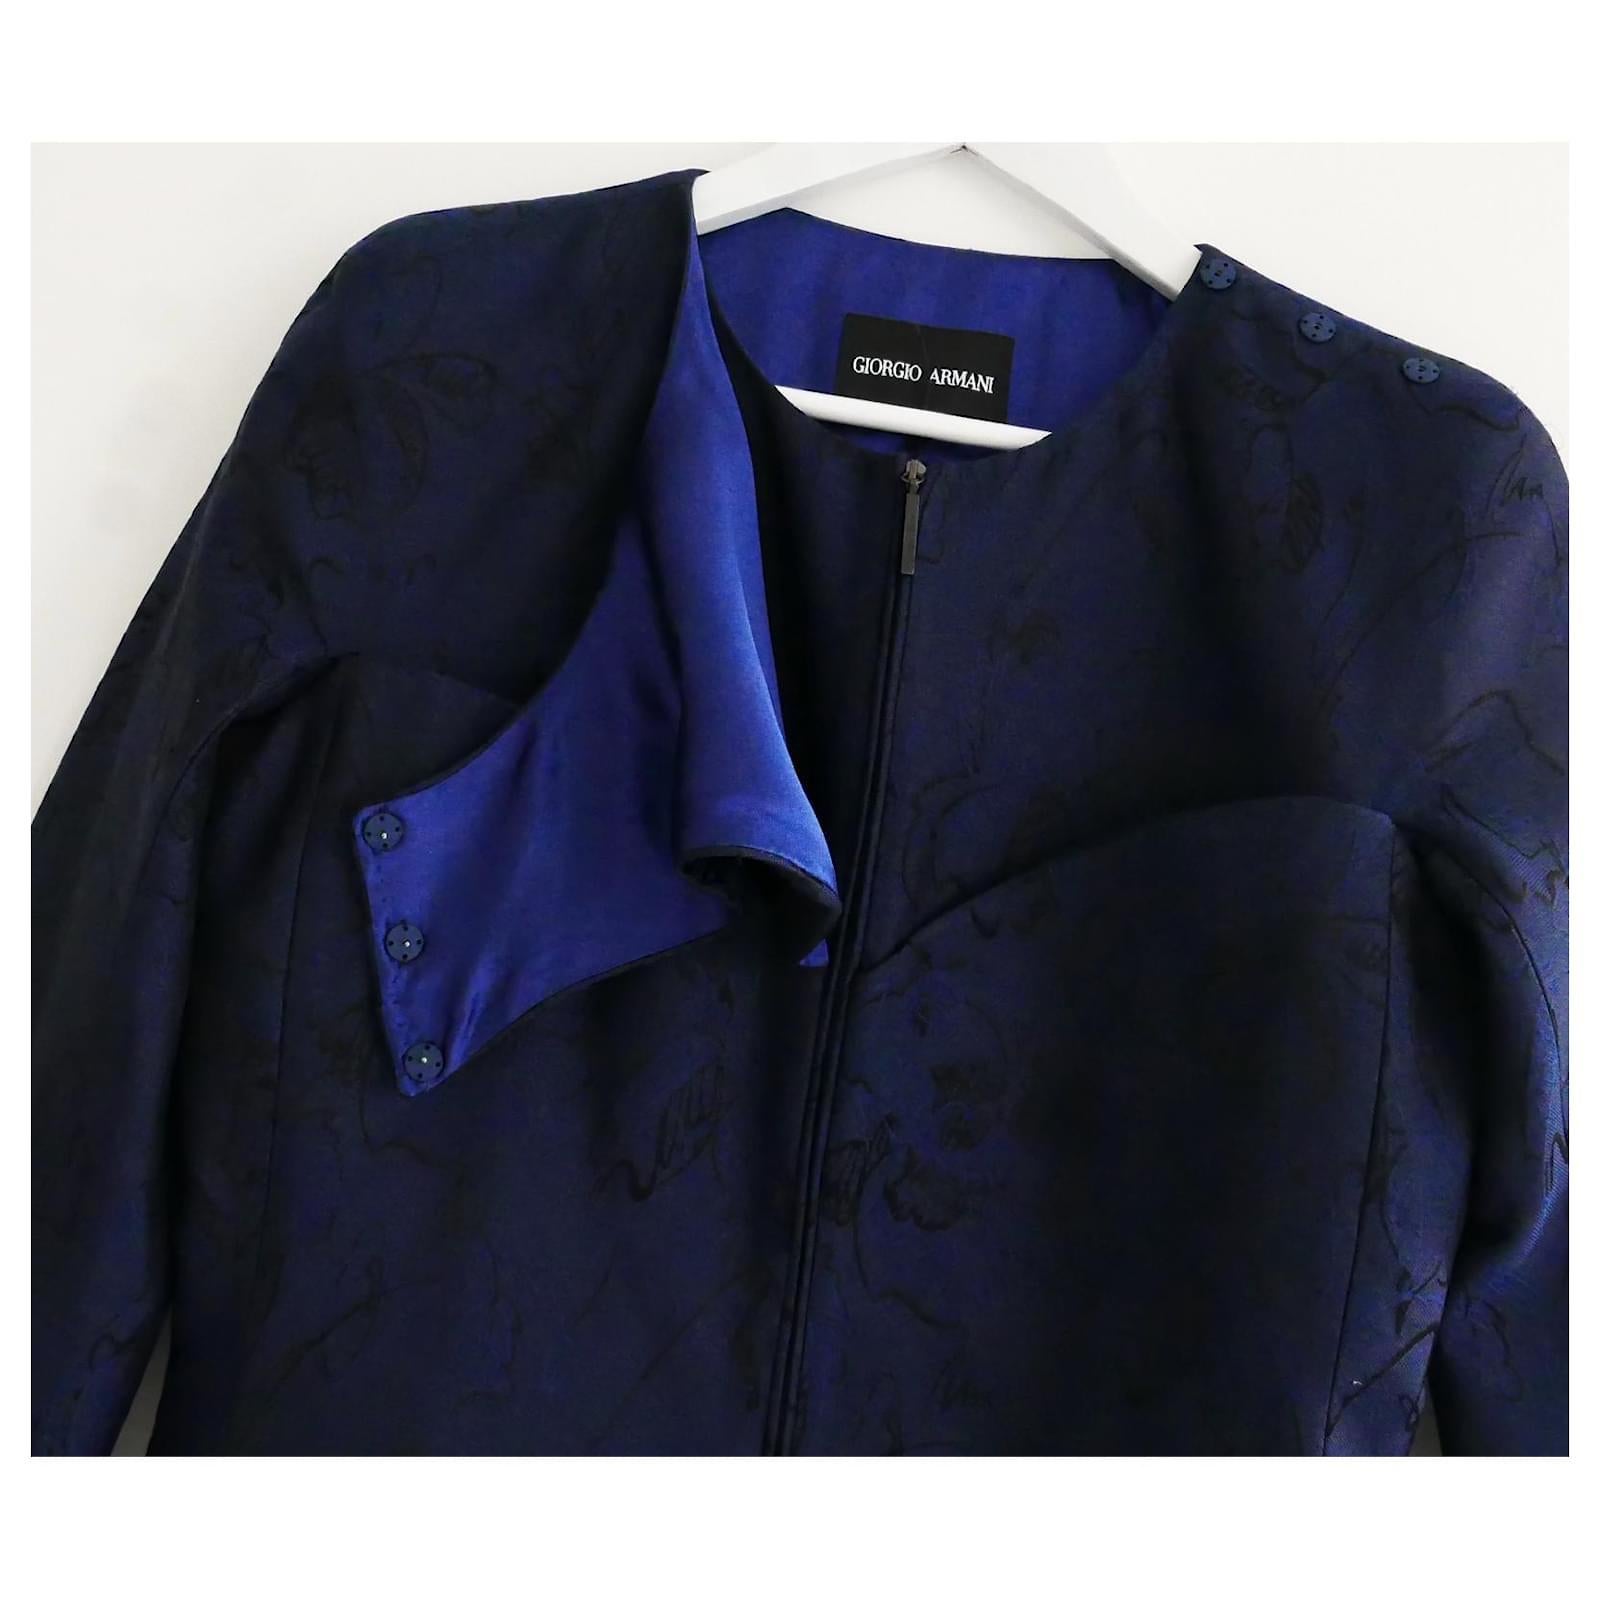 Exquise veste corset Giorgio Armani de très haute qualité. Achetée pour £1700 et neuve avec étiquettes/carte d'authenticité. 
Réalisé en brocart de soie marine et noire avec une épaisse doublure en soie bleue très brillante. Superbement taillé et